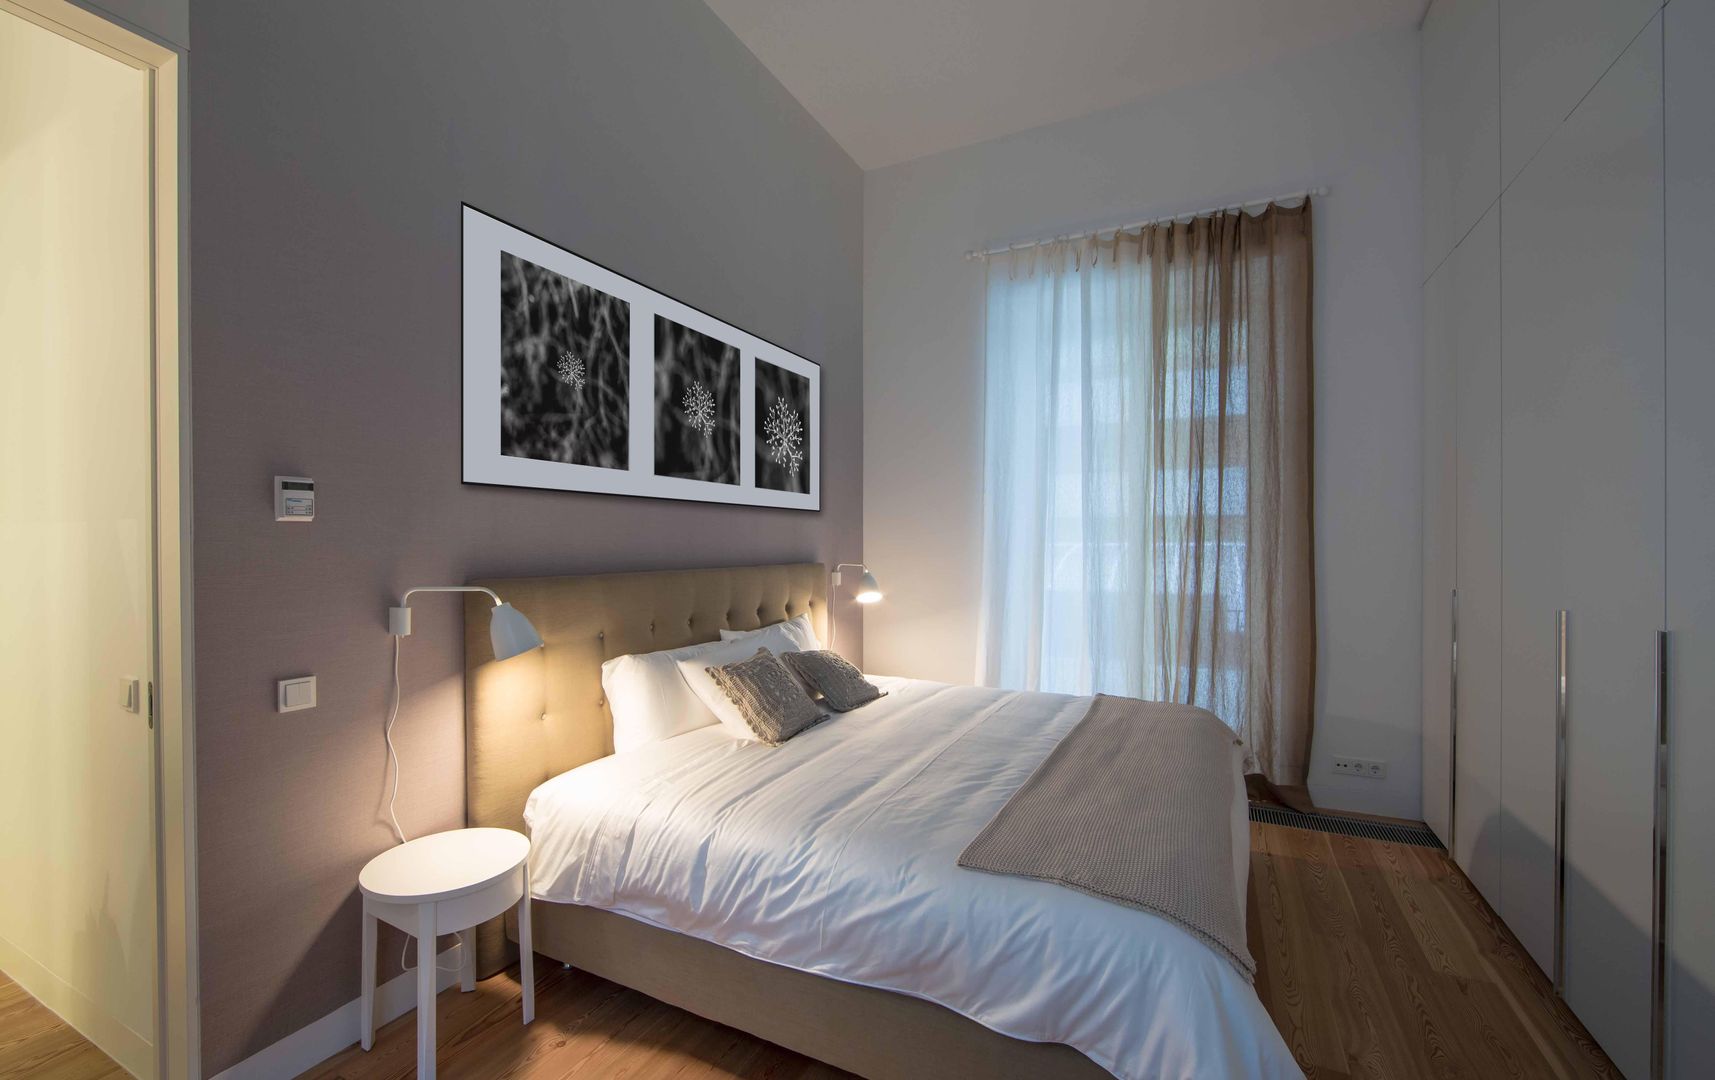 Um apartamento moderno - retro, Architect Your Home Architect Your Home Modern Bedroom